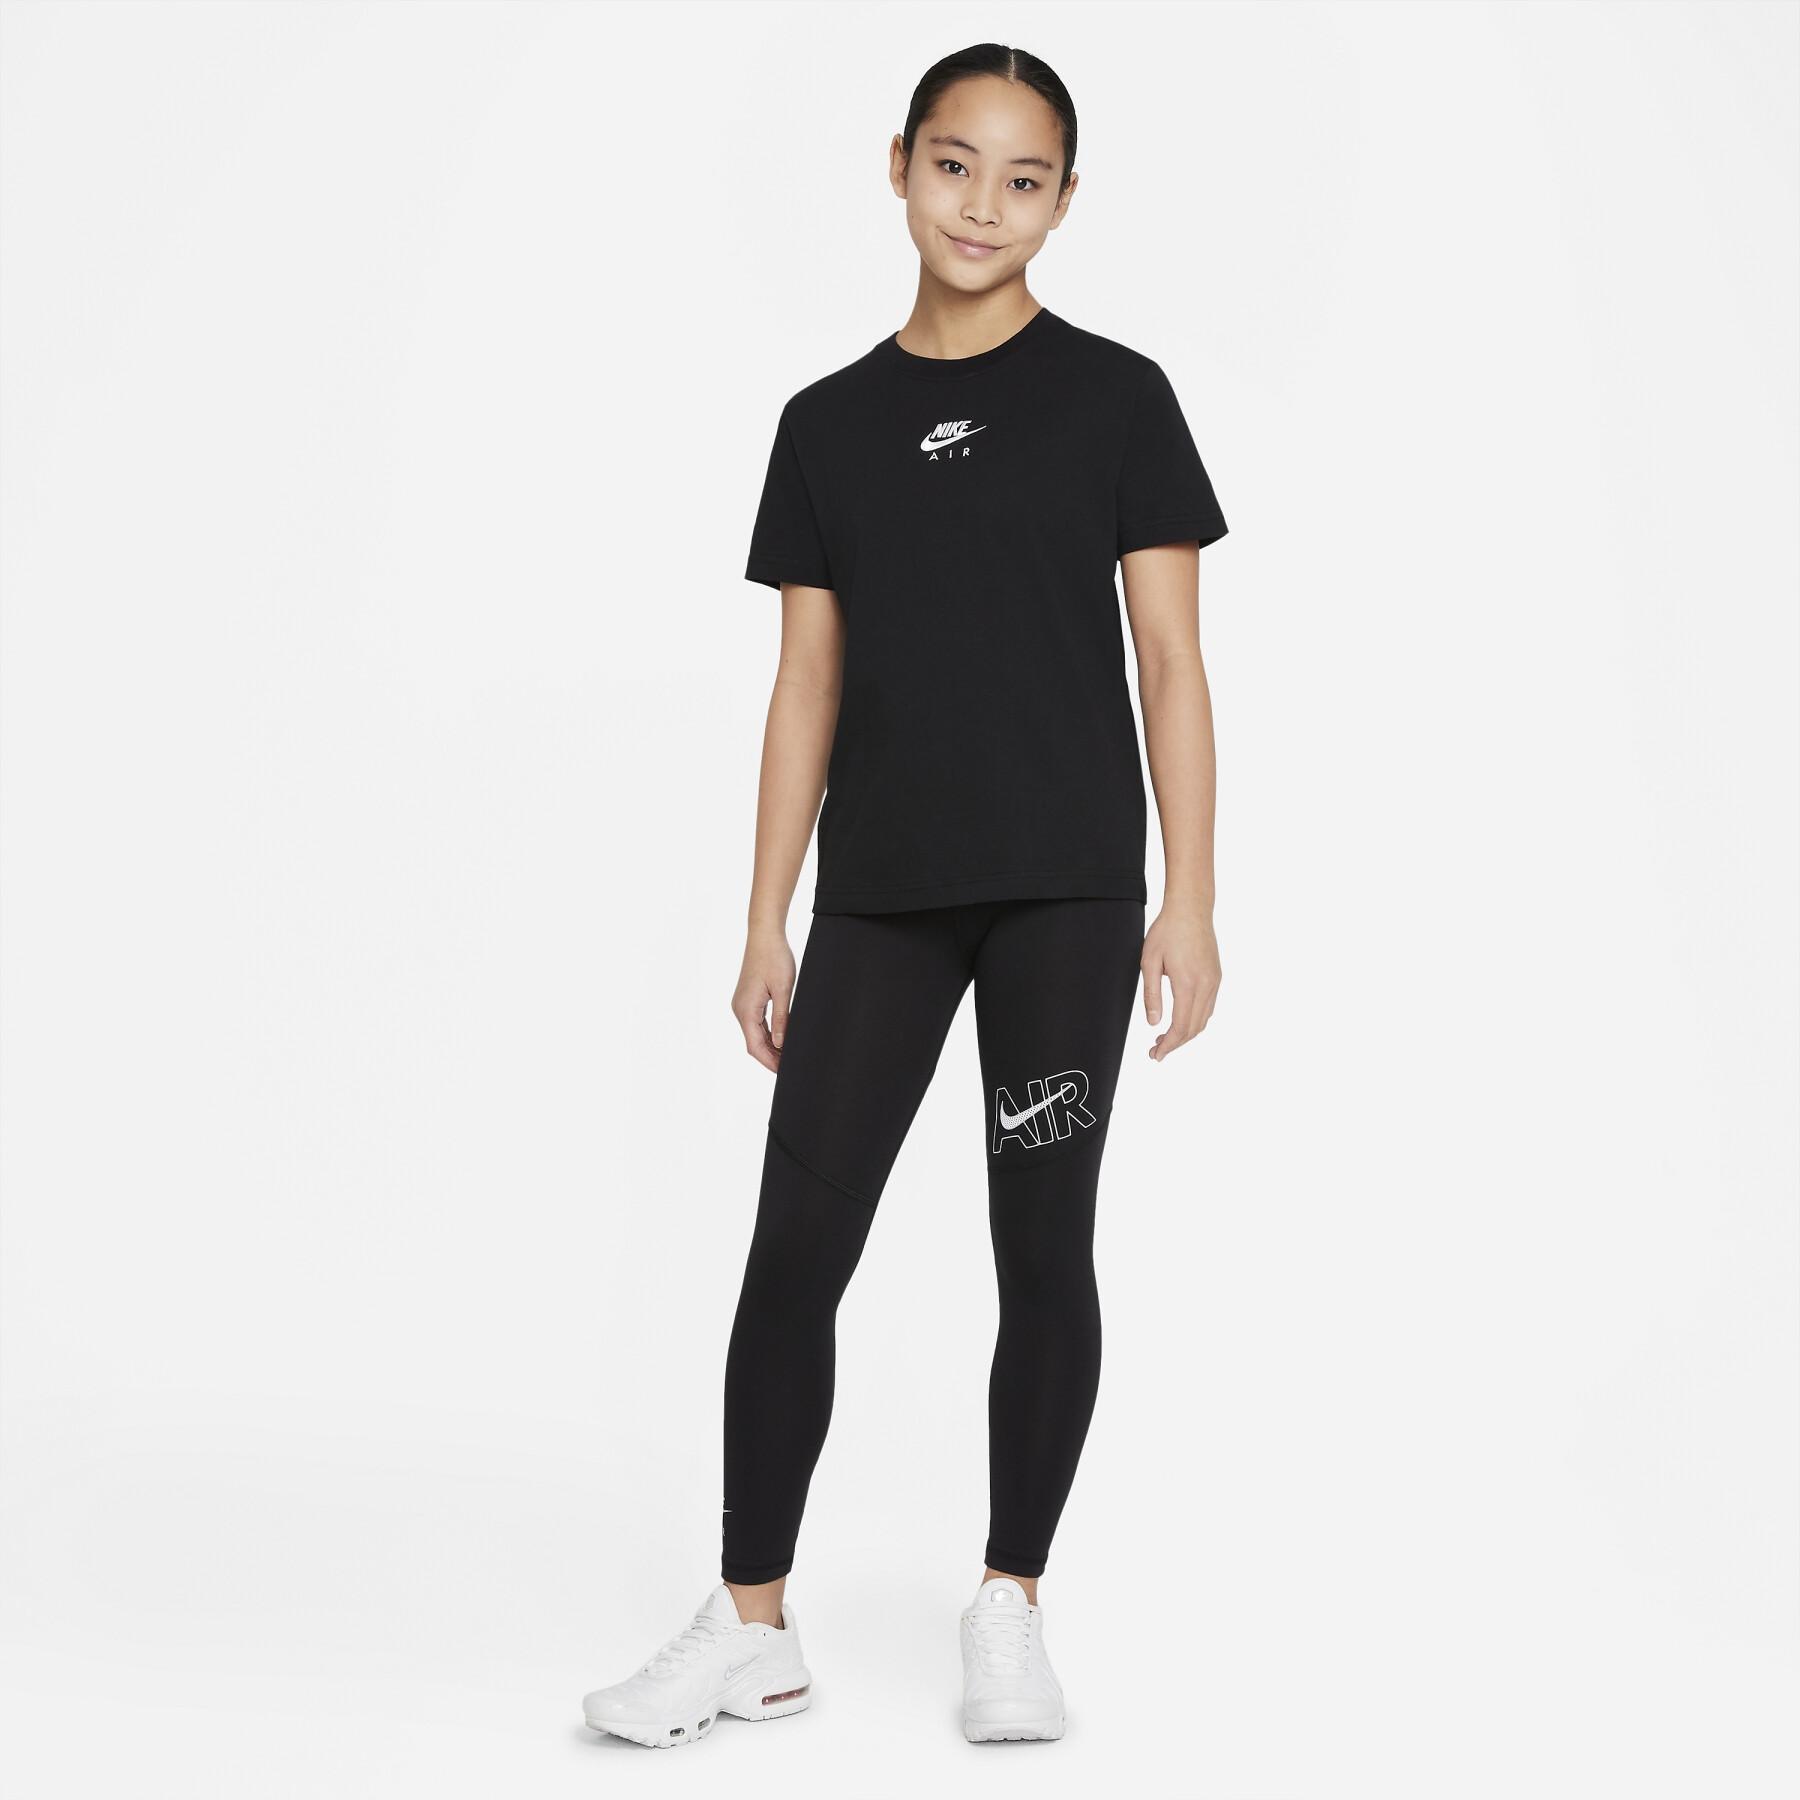 Camiseta de chica Nike Air